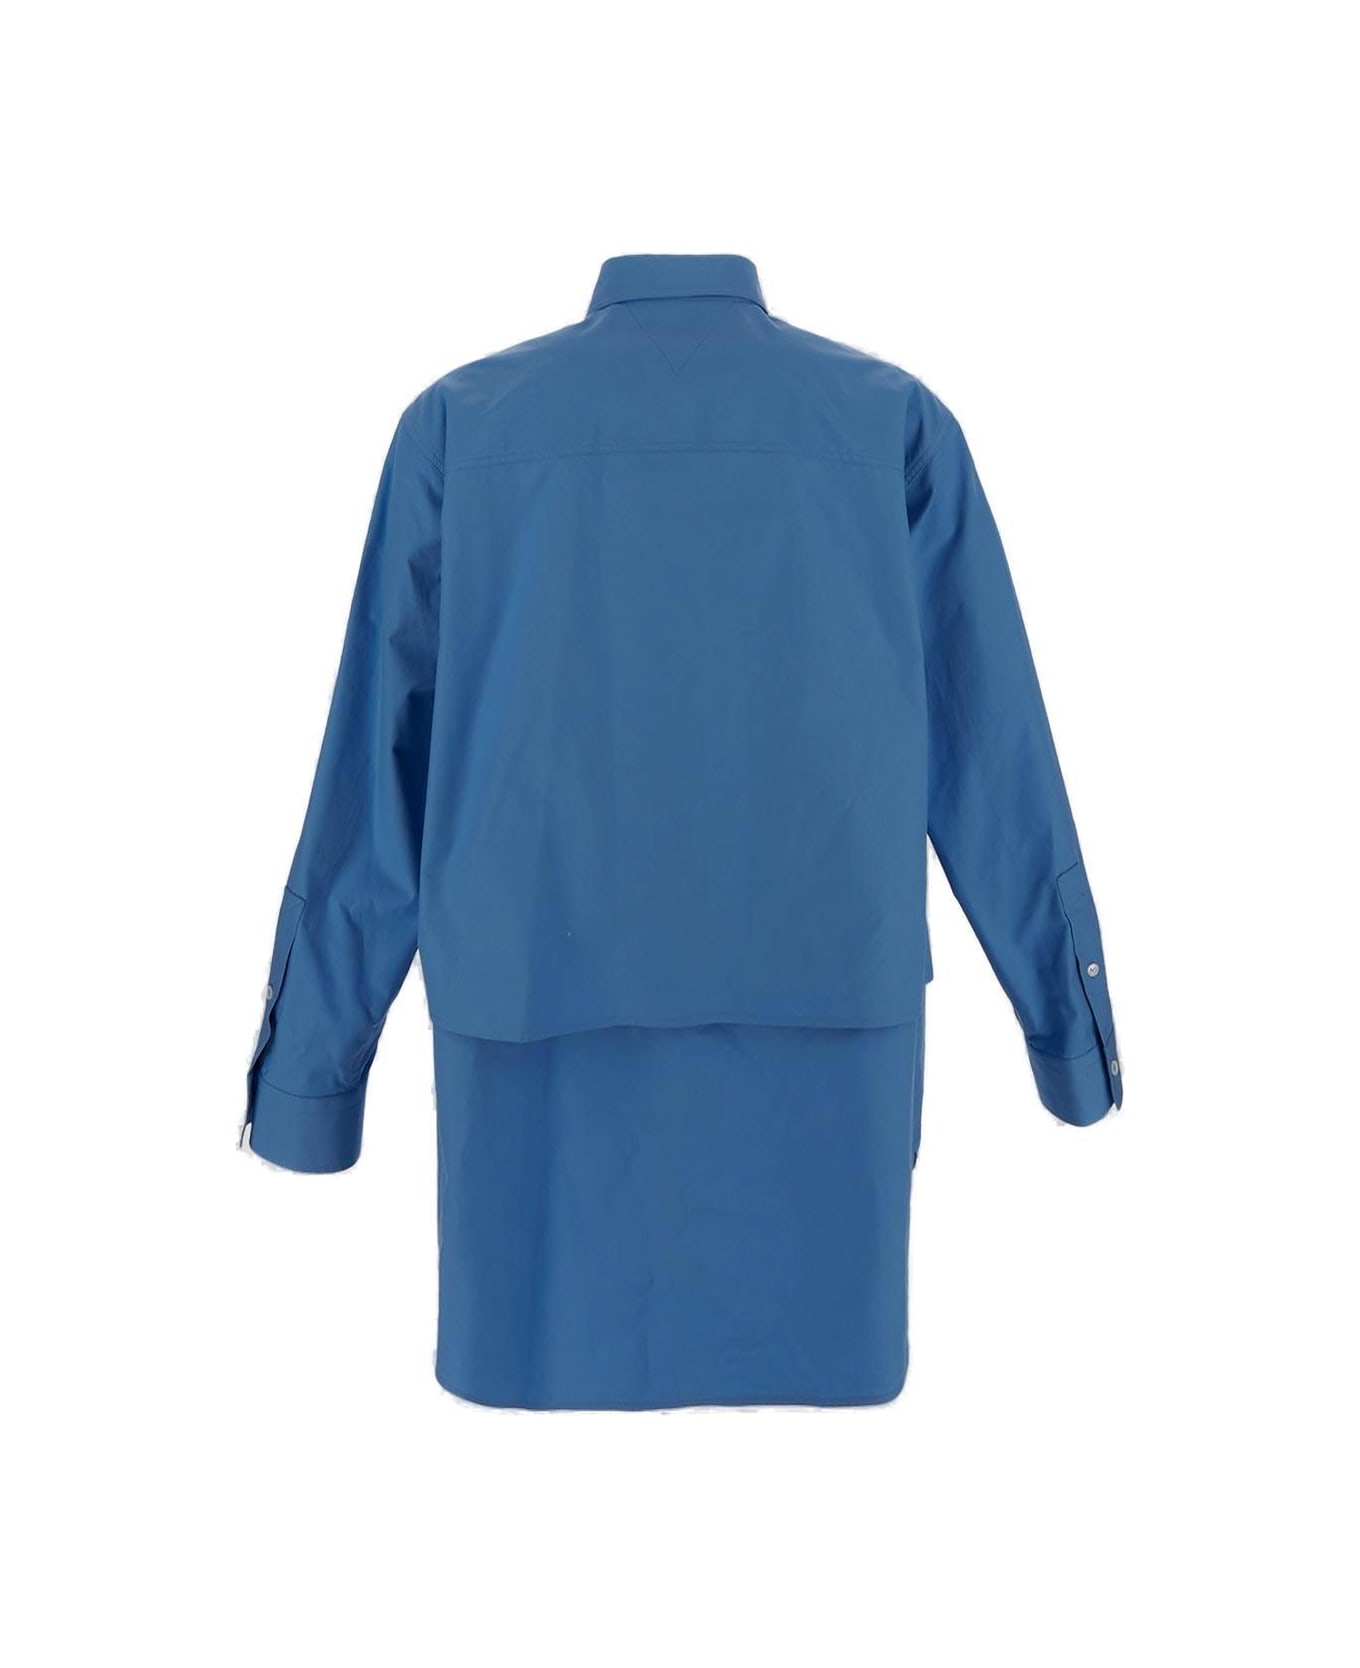 Bottega Veneta Double Layer Shirt - LIGHT BLUE